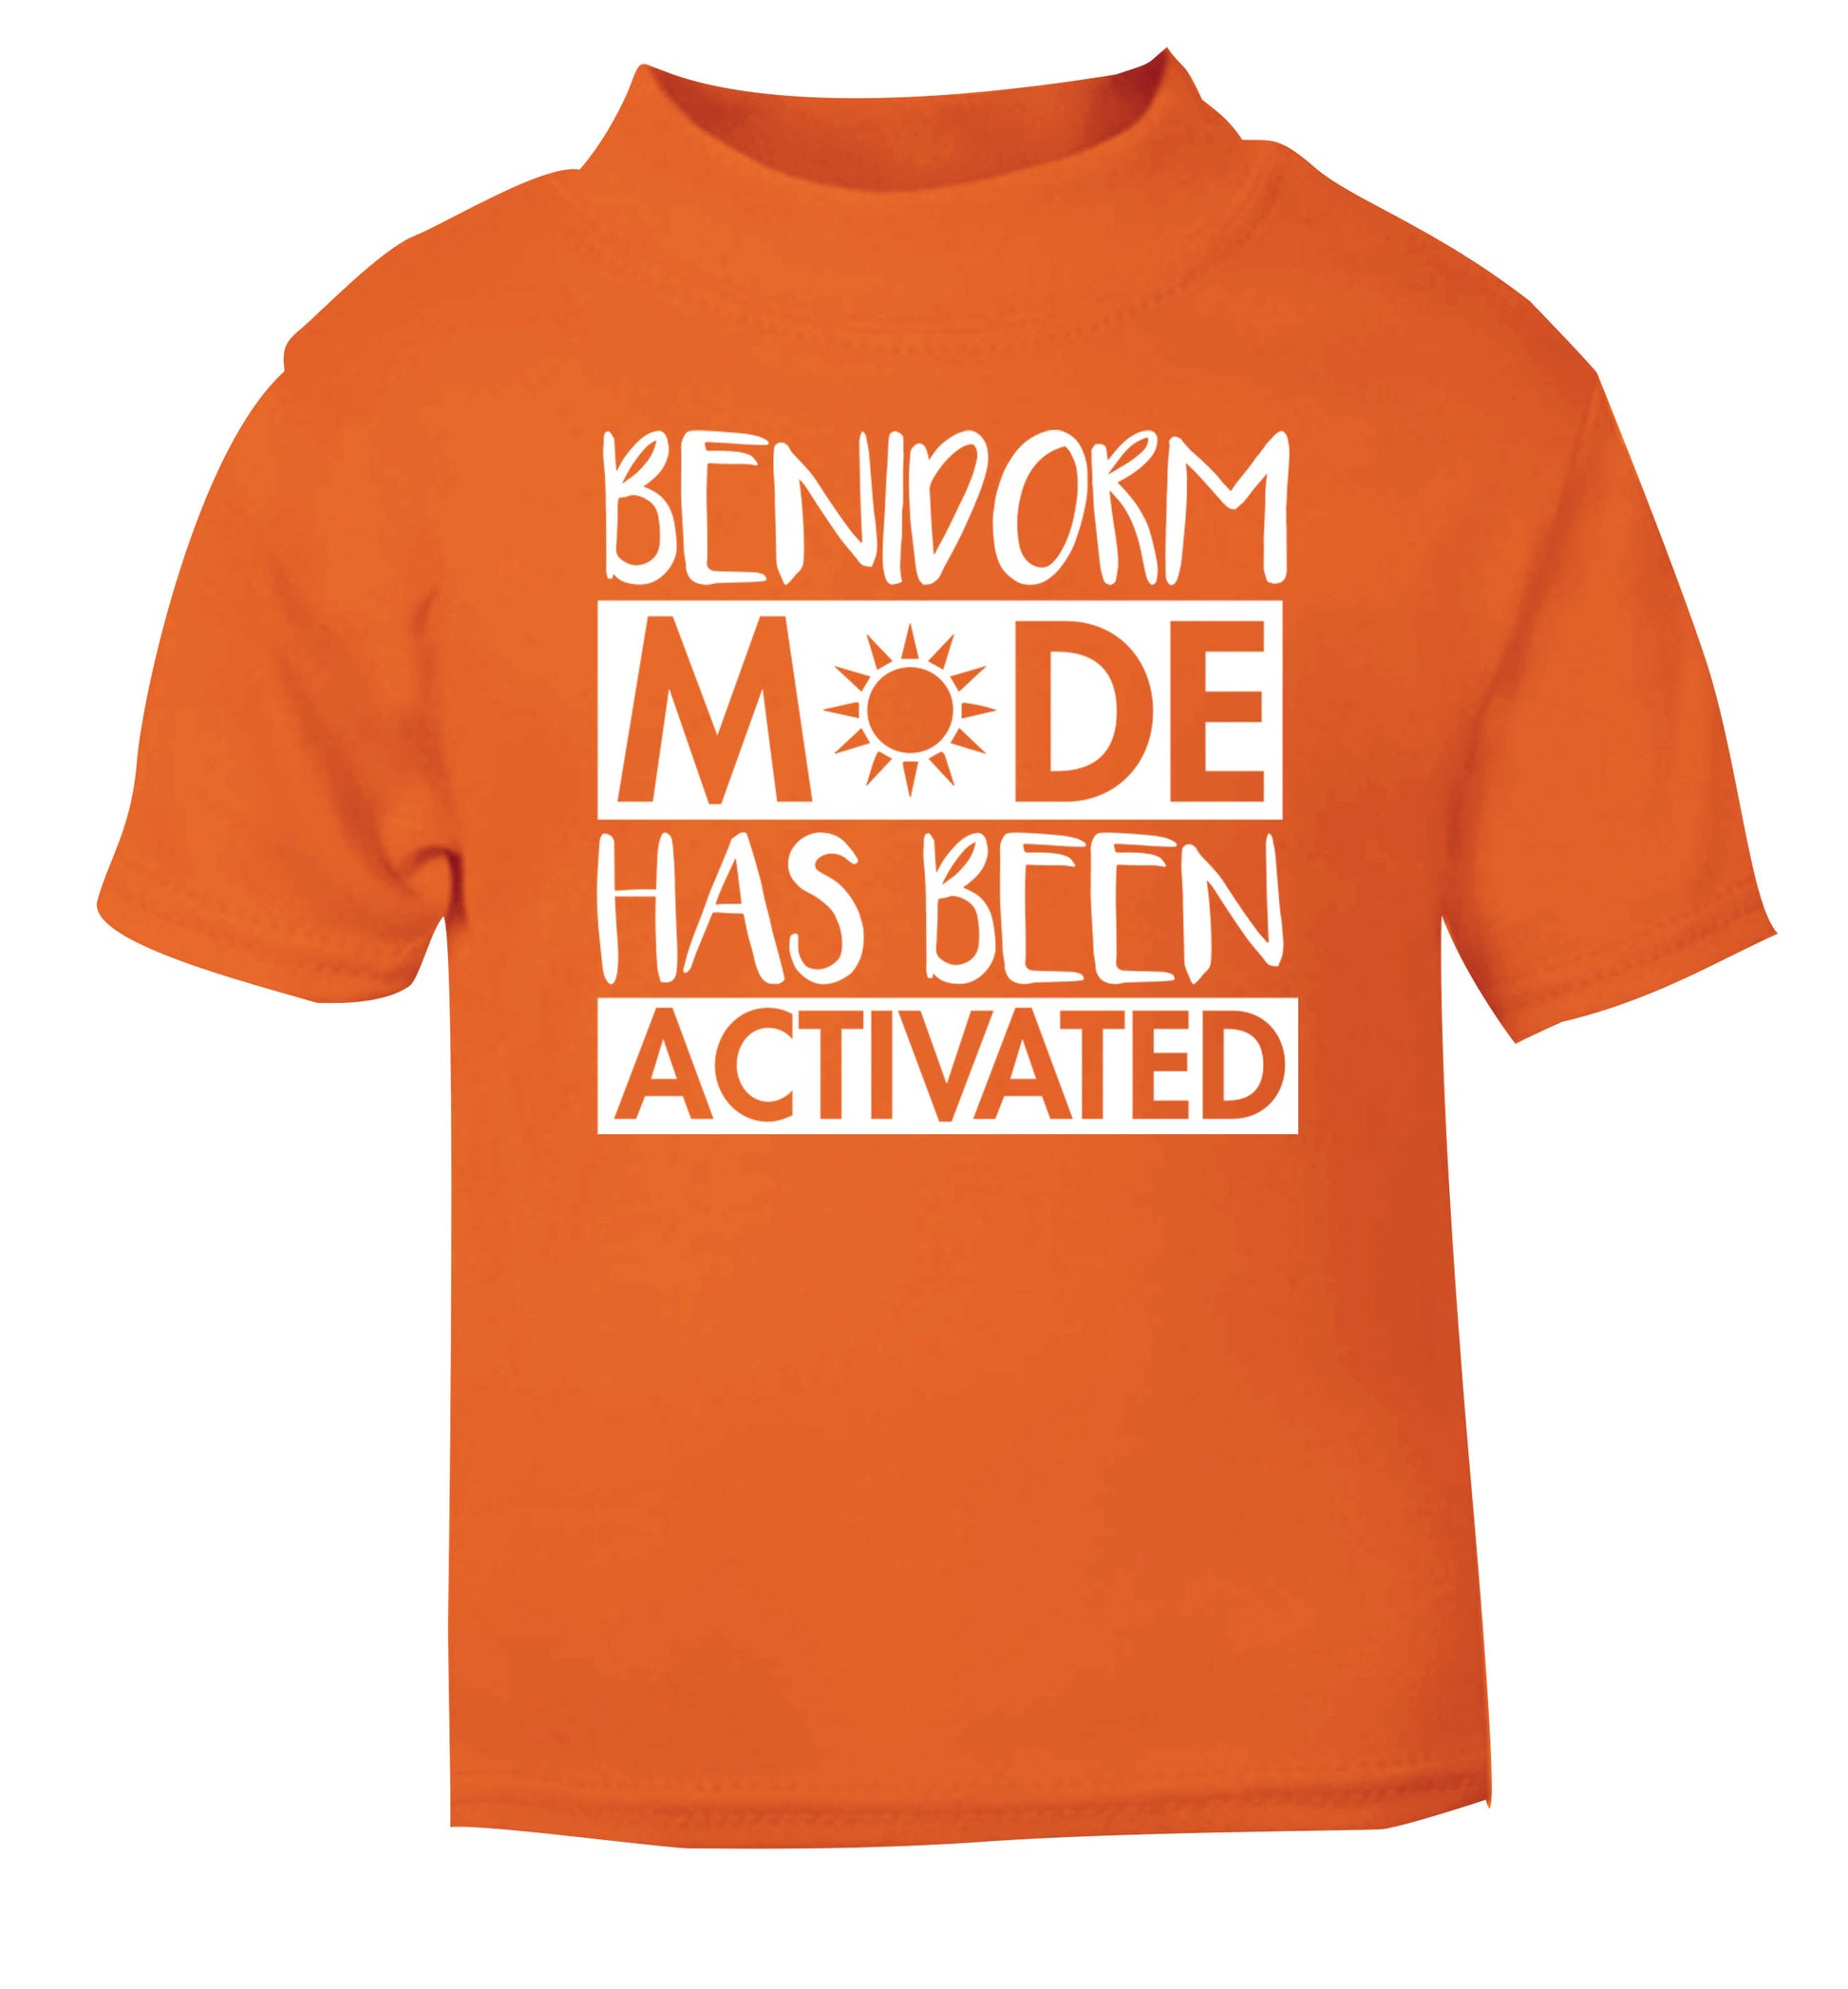 Benidorm mode has been activated orange Baby Toddler Tshirt 2 Years